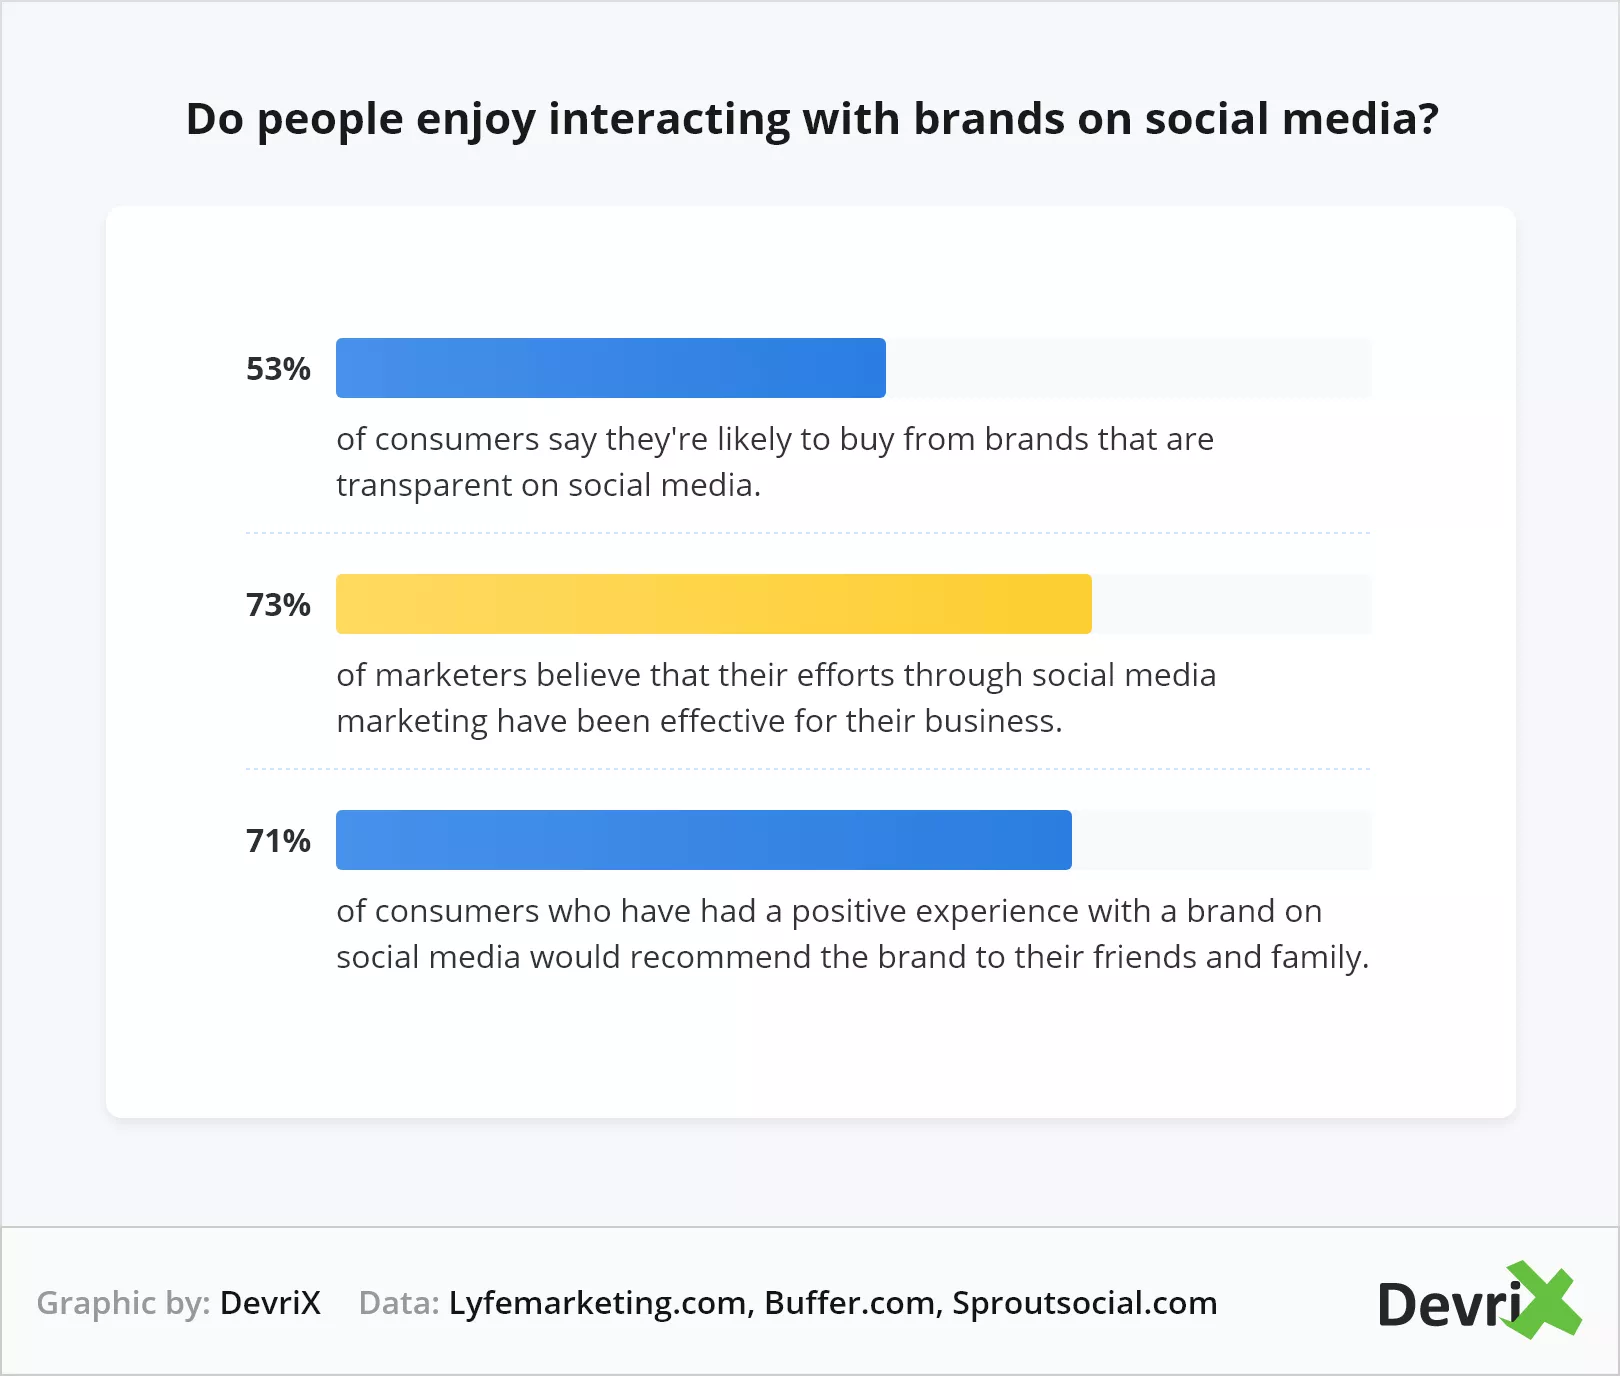 нравится ли людям взаимодействовать с брендами в социальных сетях